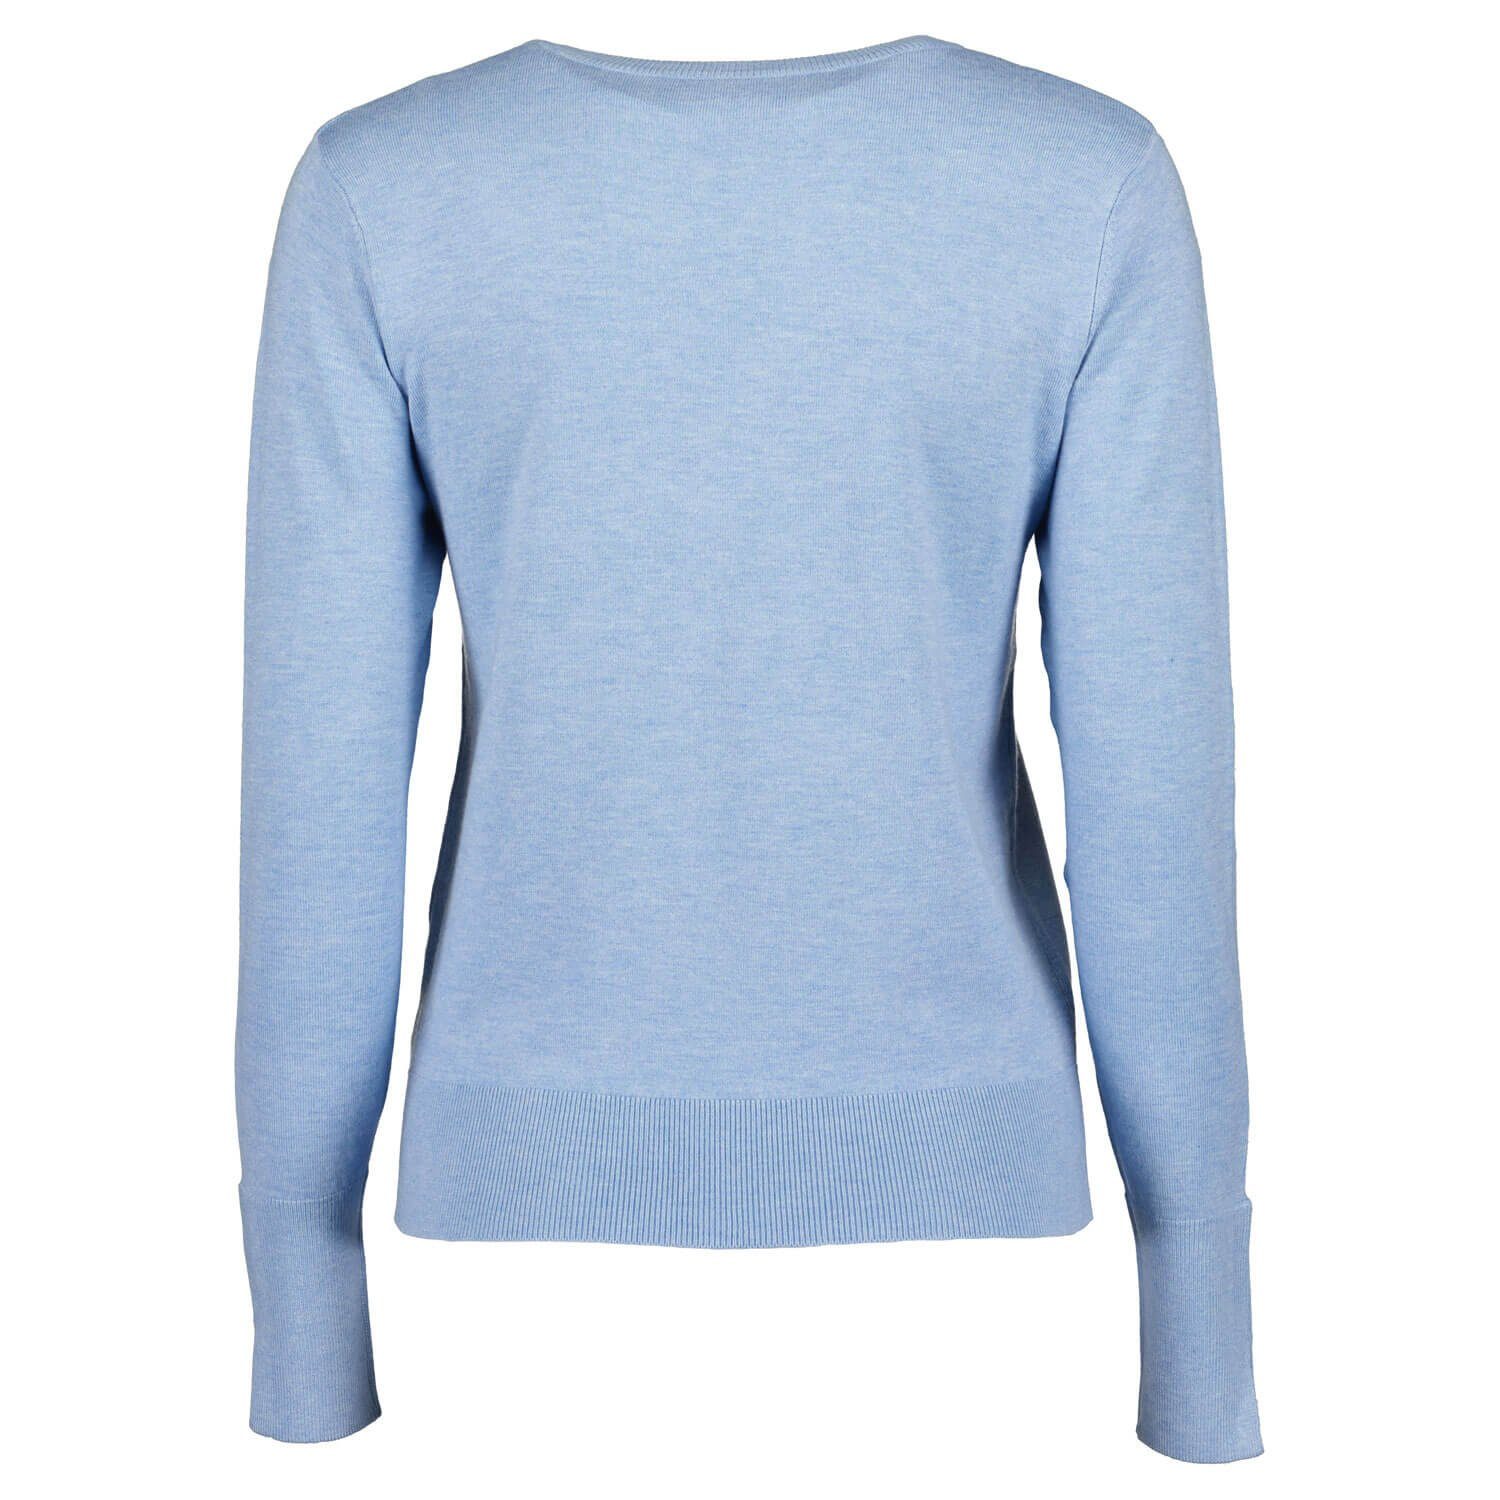 Pullover Seven Unifarben hellblau Meliert Damen - Rundhalspullover Pulli mit Rundhalsausschnitt Blue